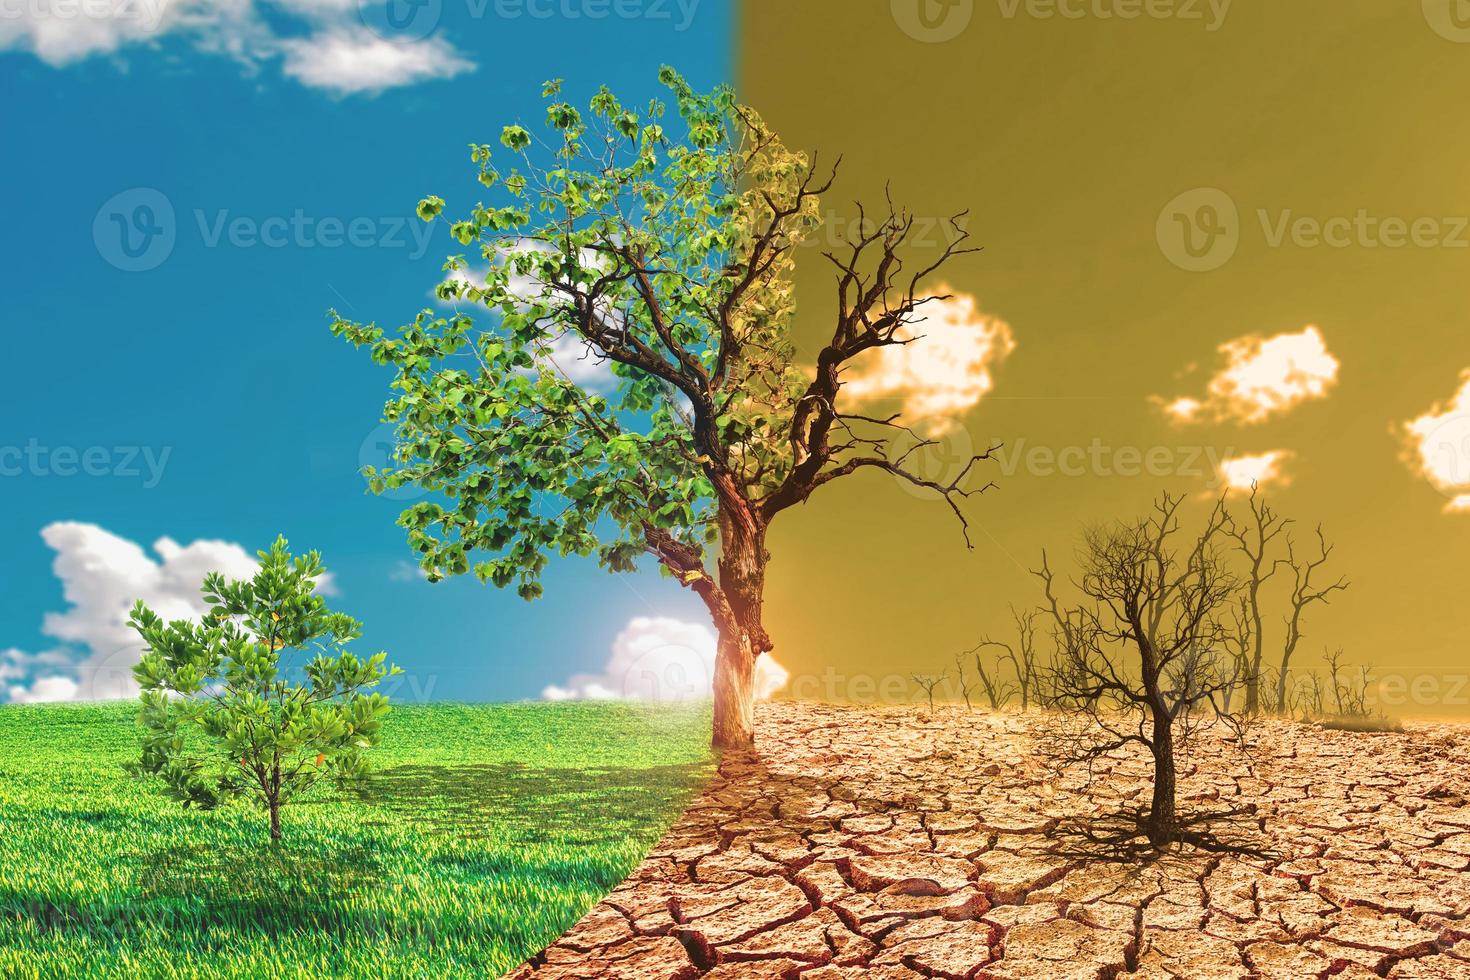 Immagine del concetto di riscaldamento globale che mostra gli effetti della terraferma foto